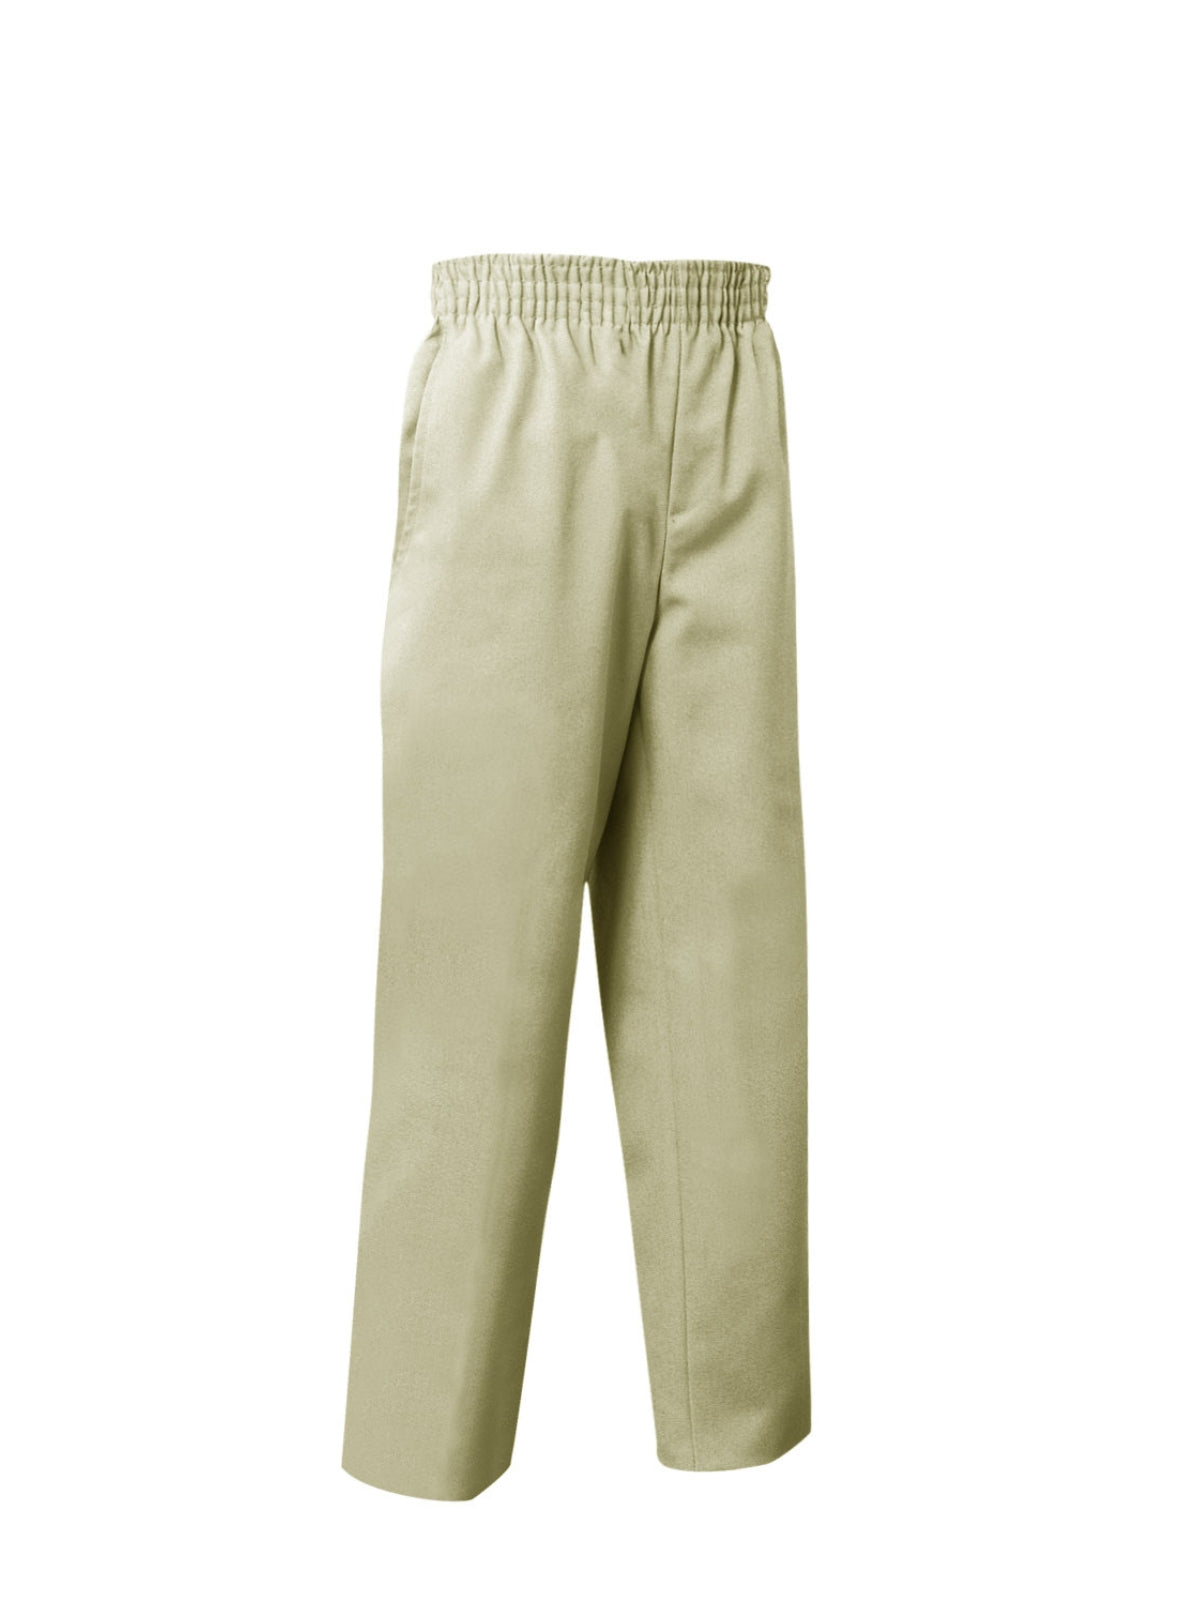 Unisex Pull-On Pants - 7059 - Sand Khaki